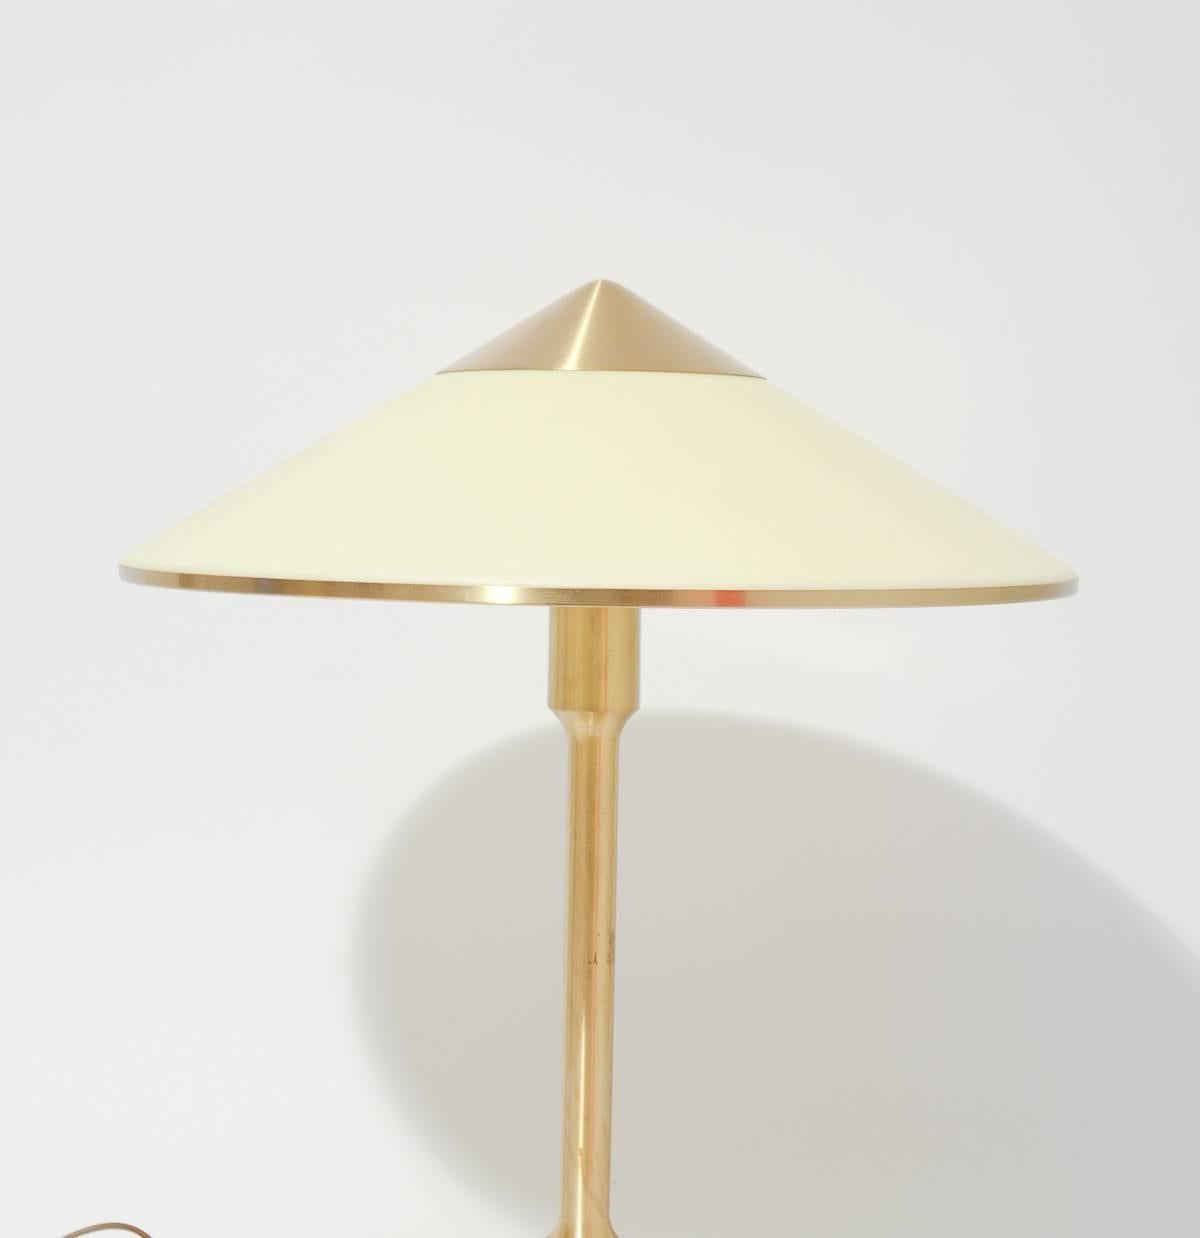 Danish Kongelys 'King' Desk Lamp by Niels Rasmussen Thykier for Fog and Mørup, 1940 For Sale